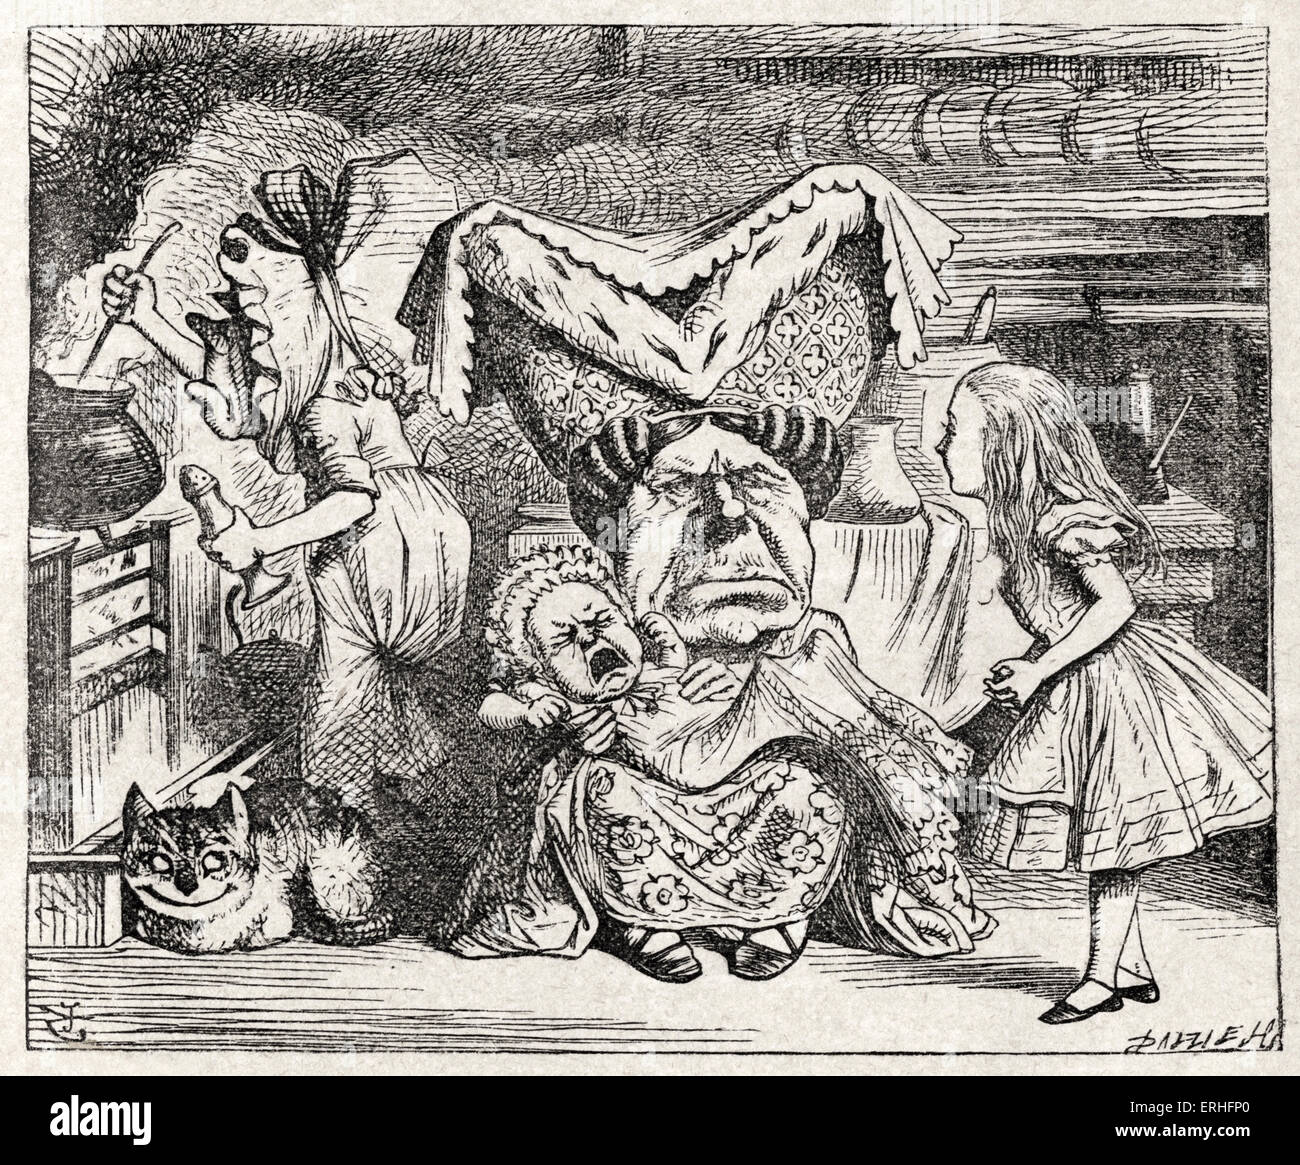 La Duquesa, amamantando a un bebé, de Alicia en el país de las maravillas por Lewis Carroll (Charles Lutwidge Dodgson), Inglés para niños y escritor Foto de stock